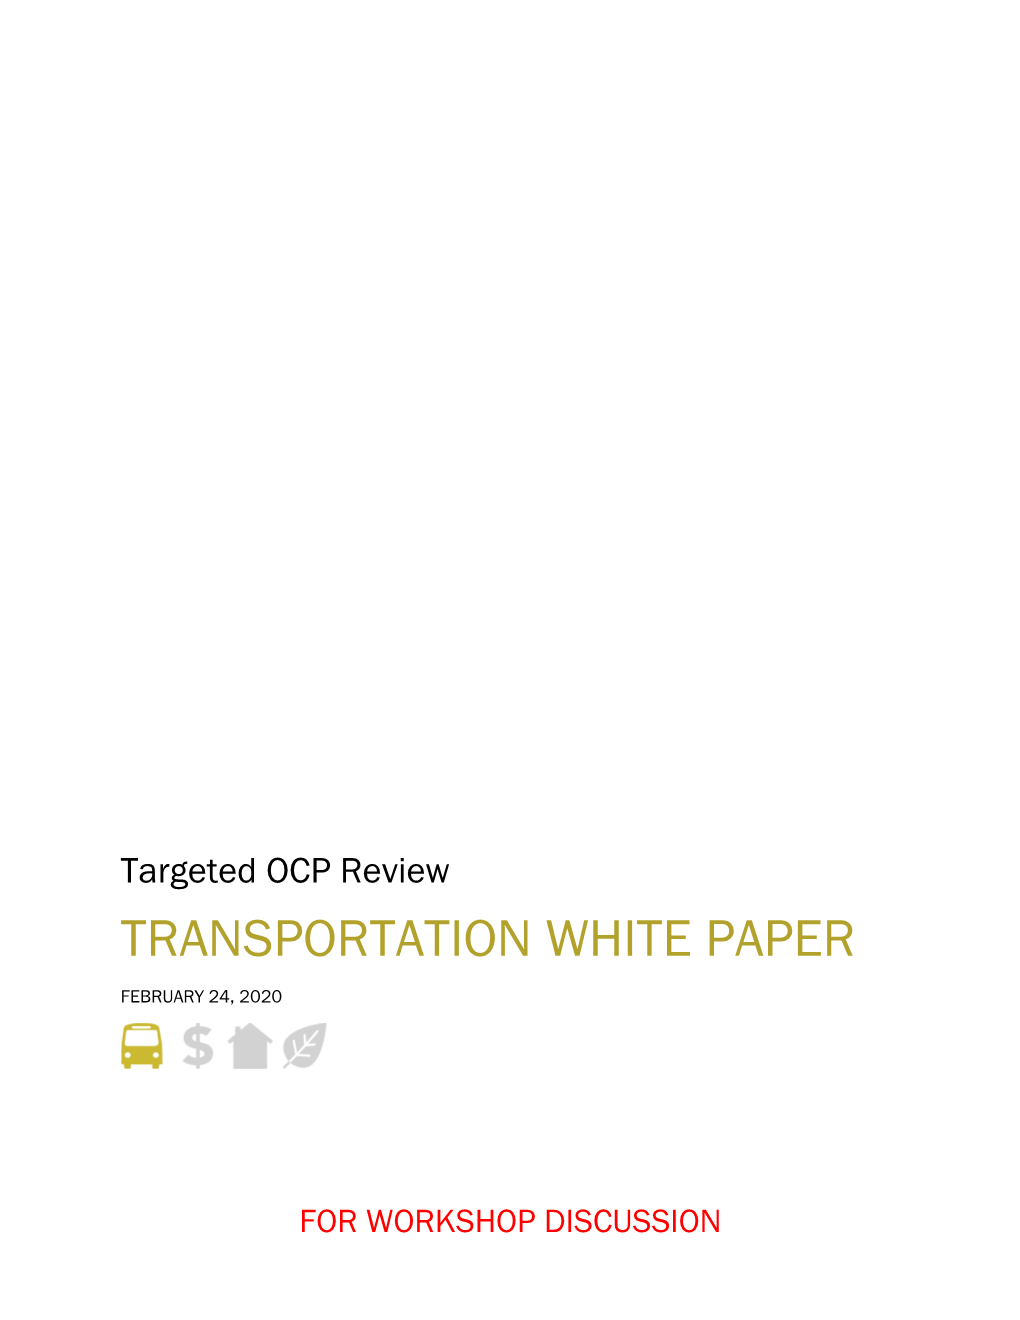 Transportation White Paper February 24, 2020